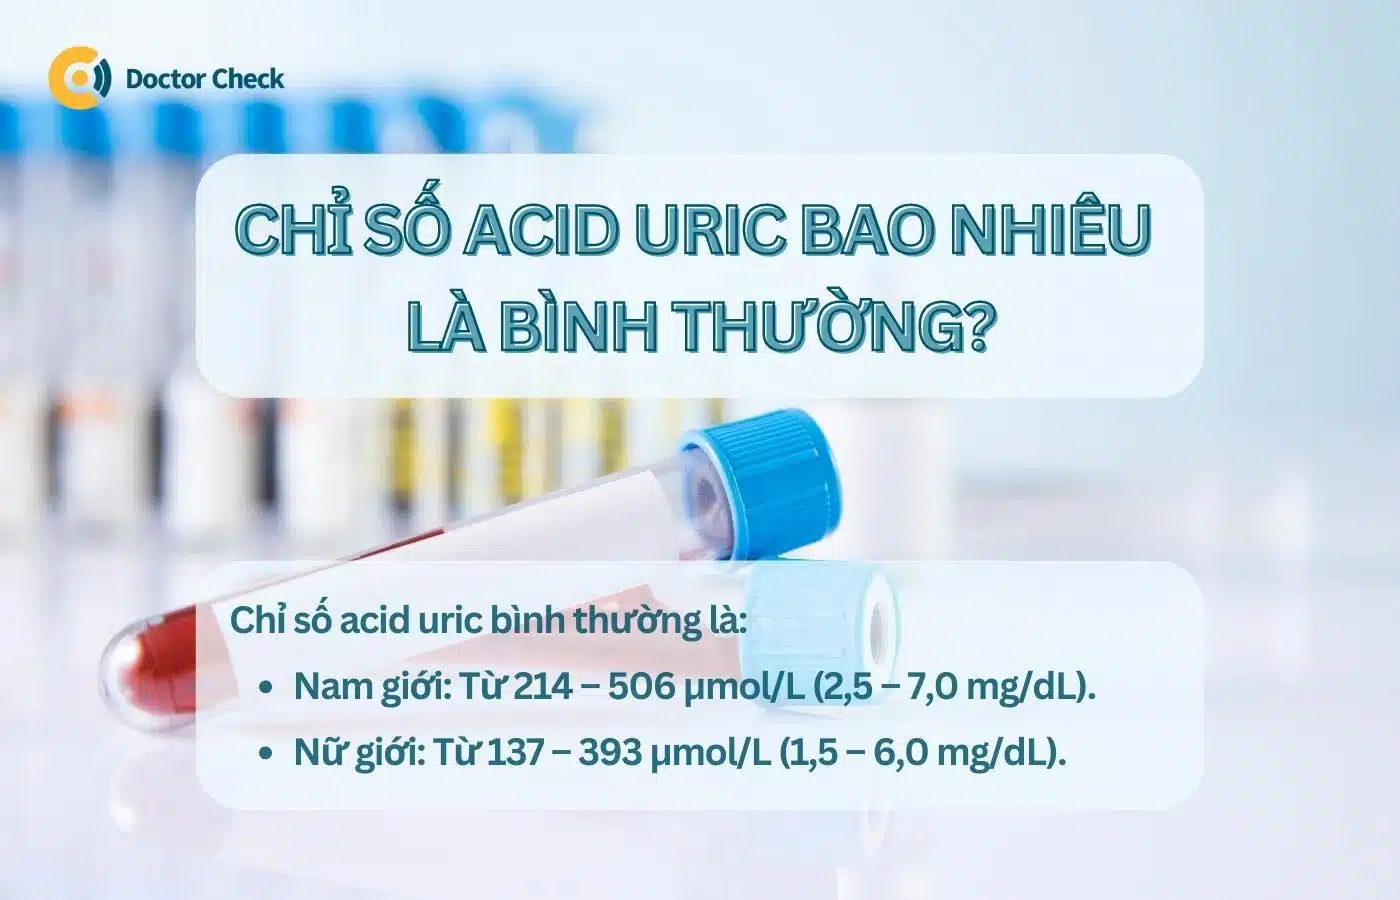 Chỉ số acid uric bao nhiêu là bình thường?